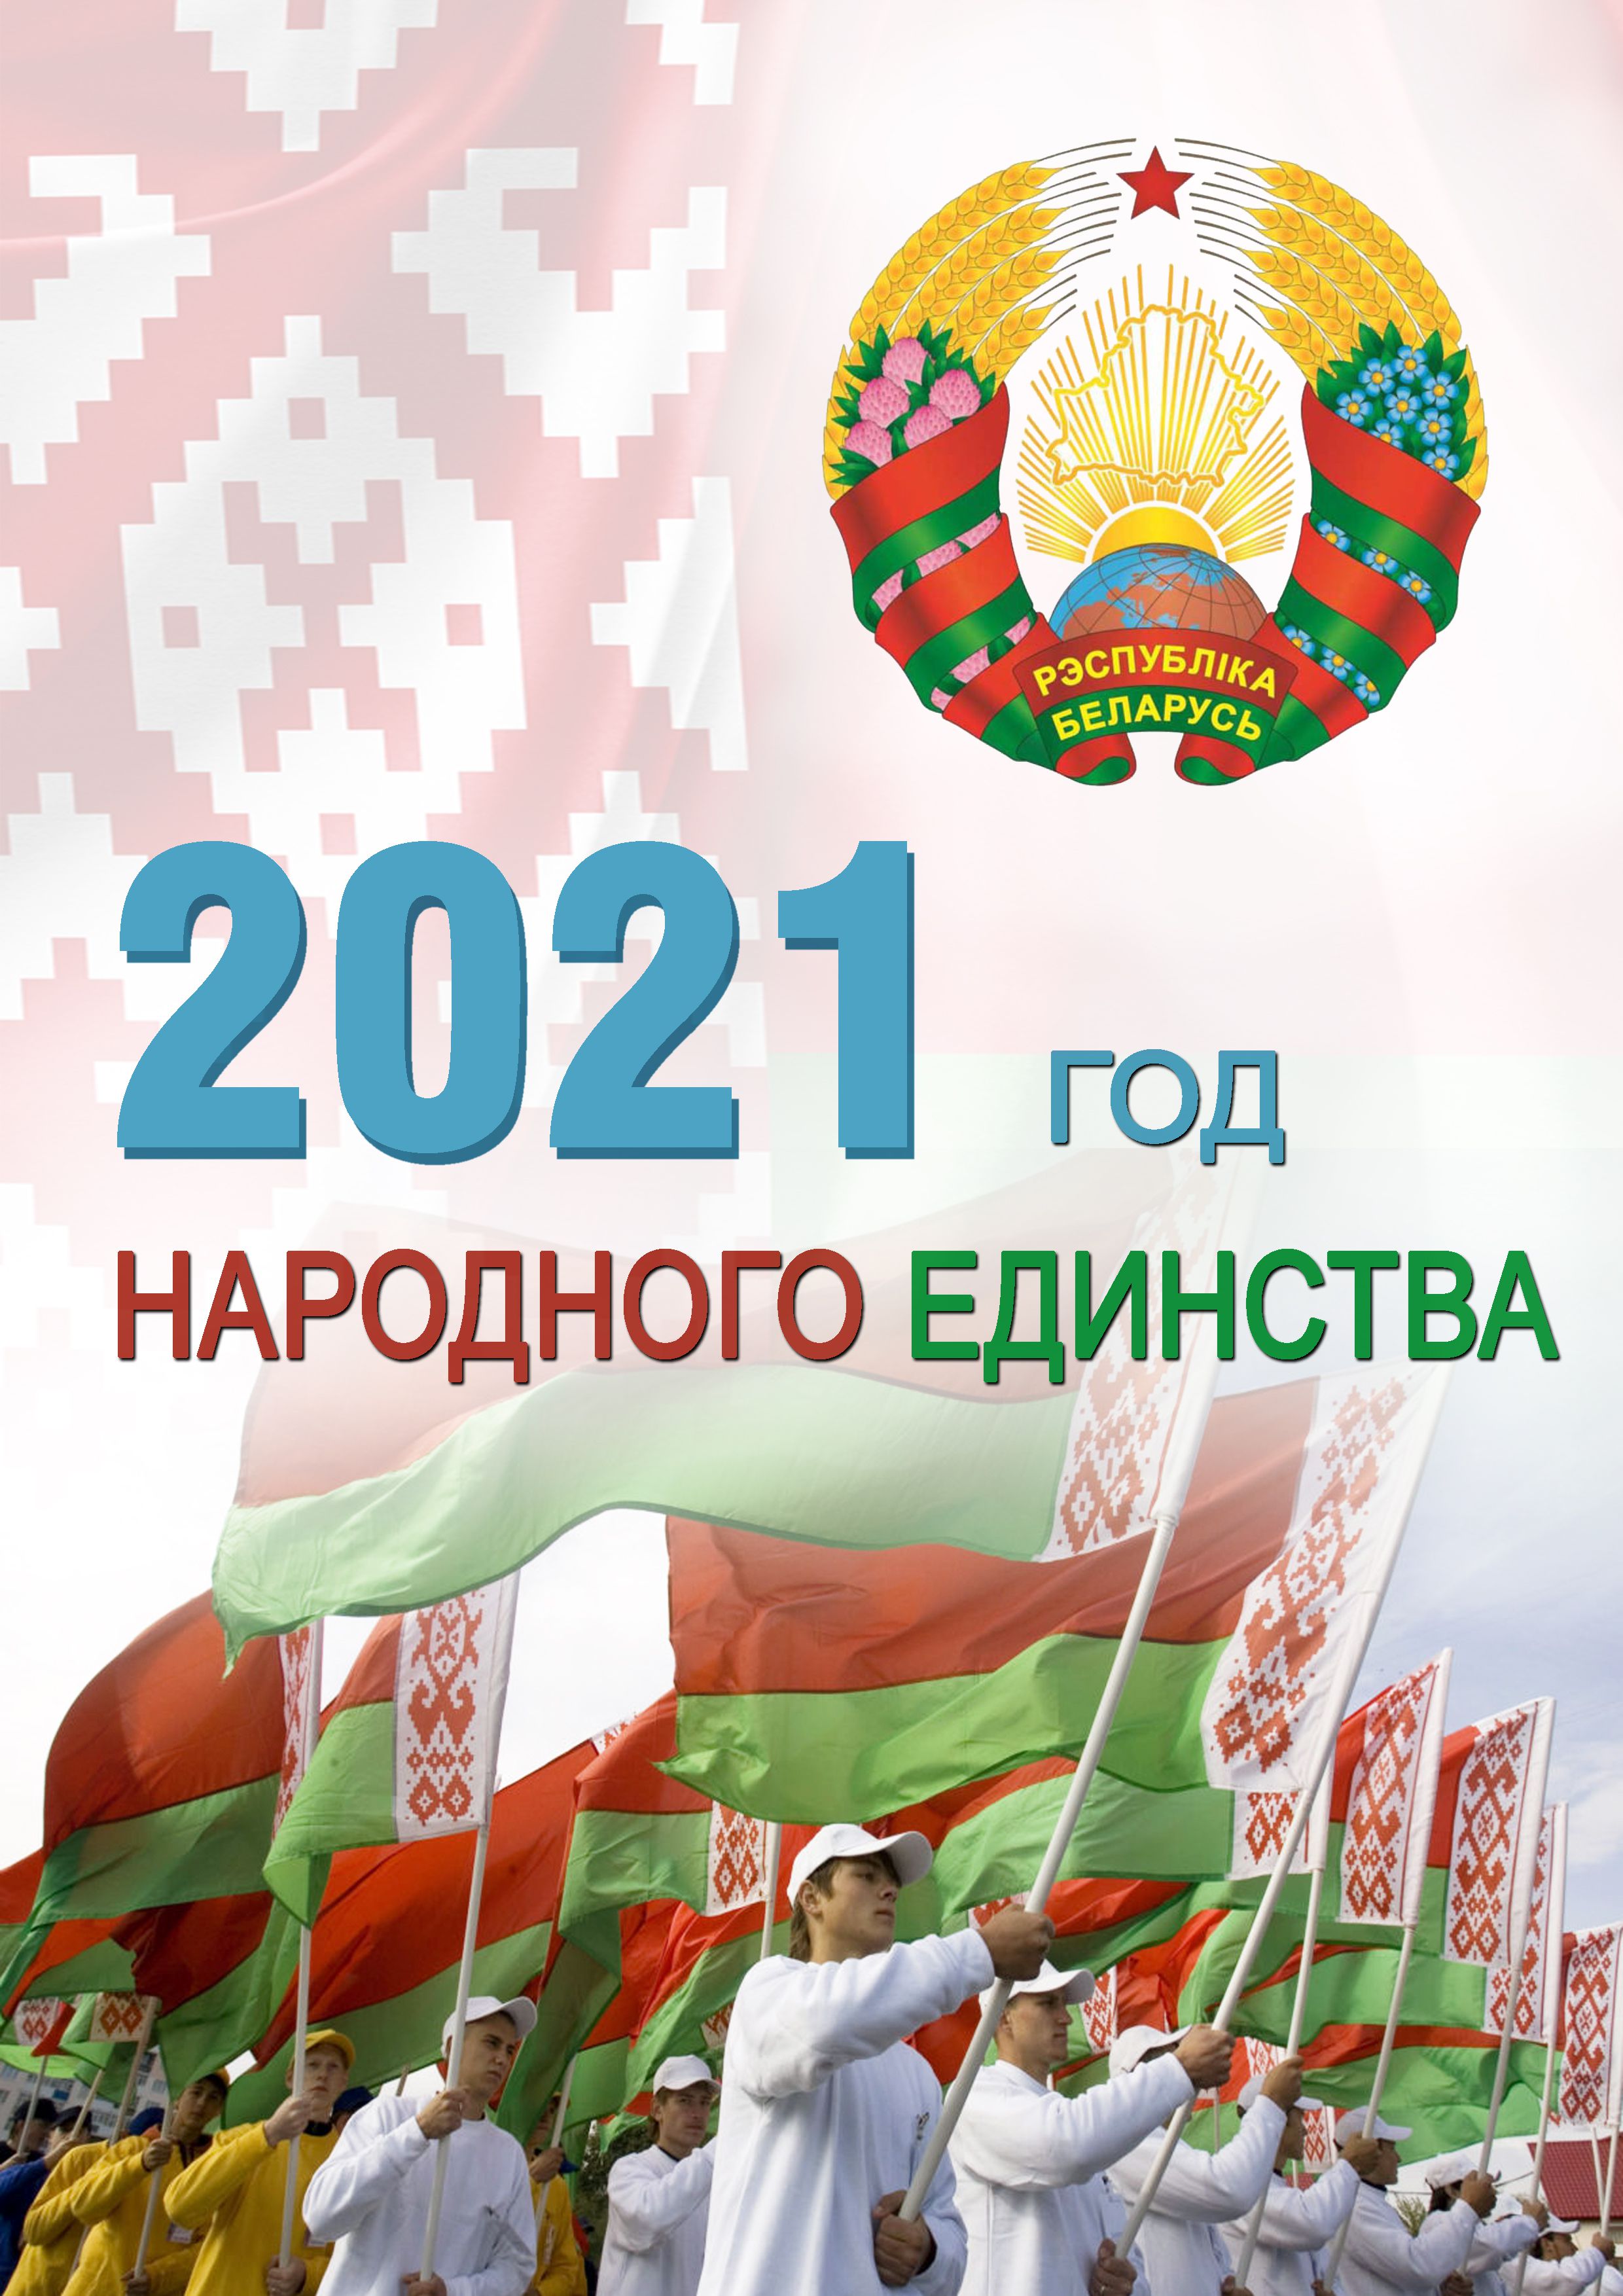 Картинки по запросу "год народного единства 2021"